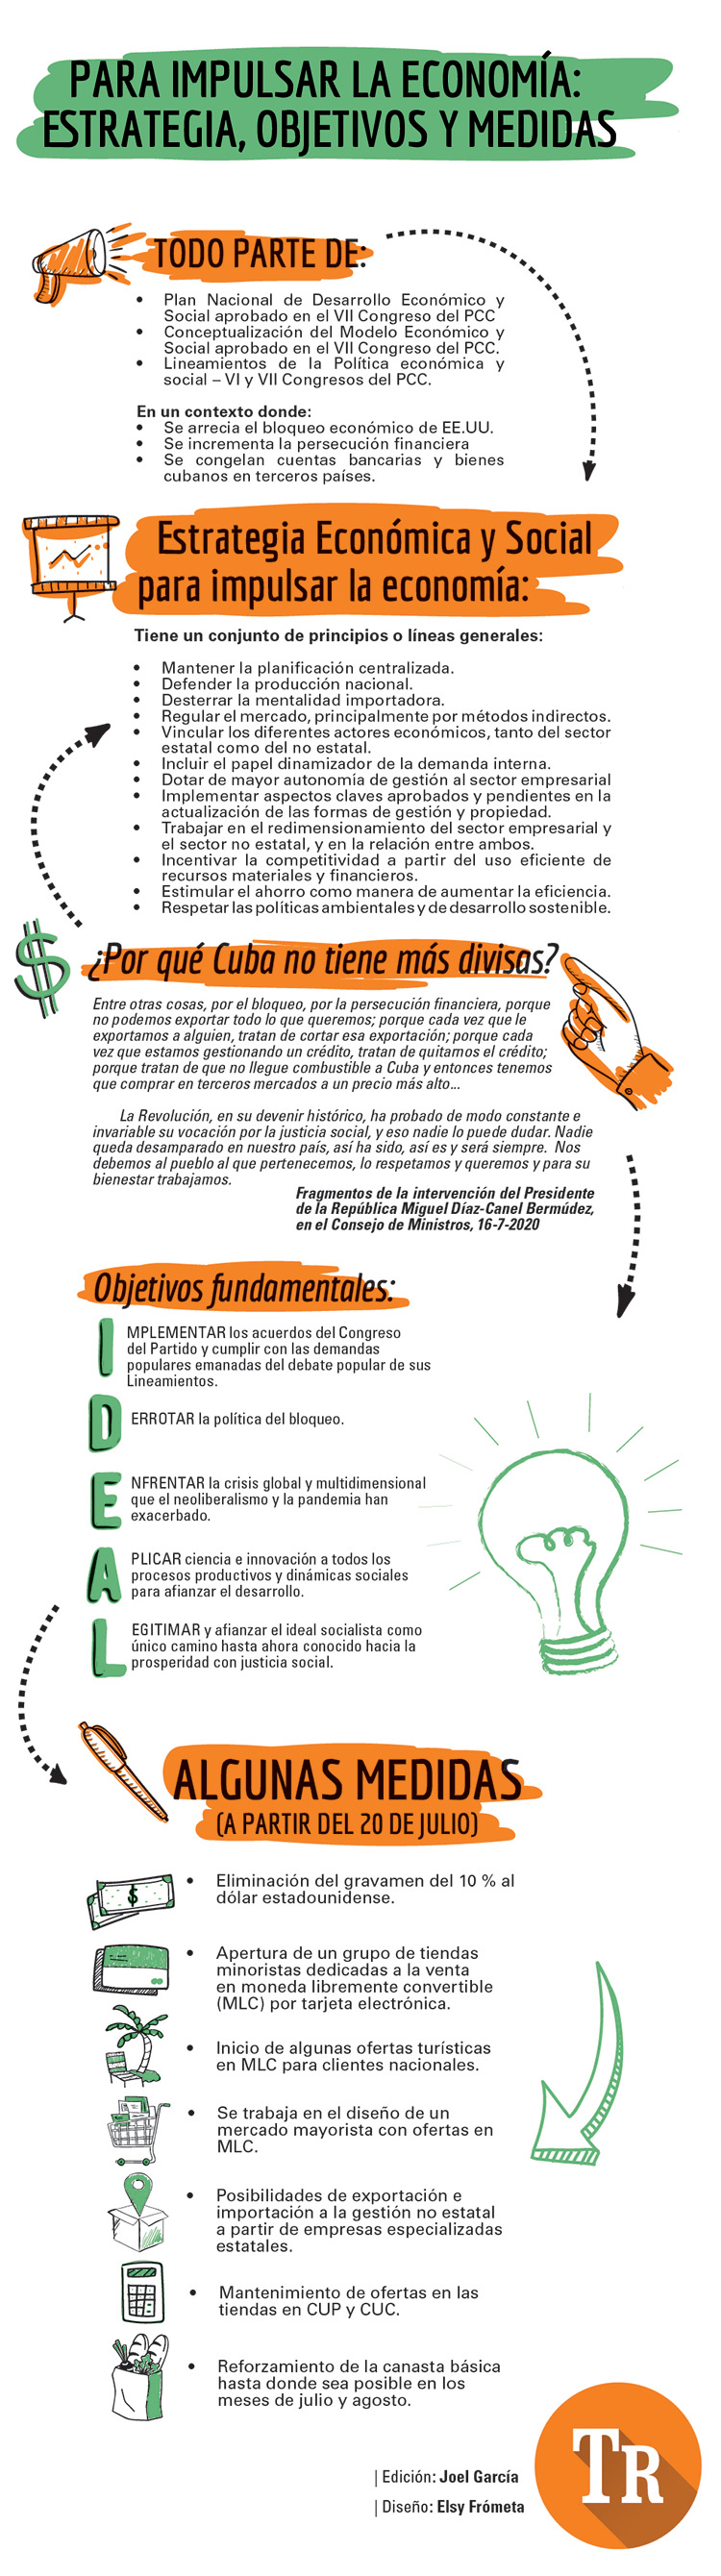 Estrategia, Objetivos y Medidas para impulsar la economía Cubana. Infografía: Elsy Frómeta